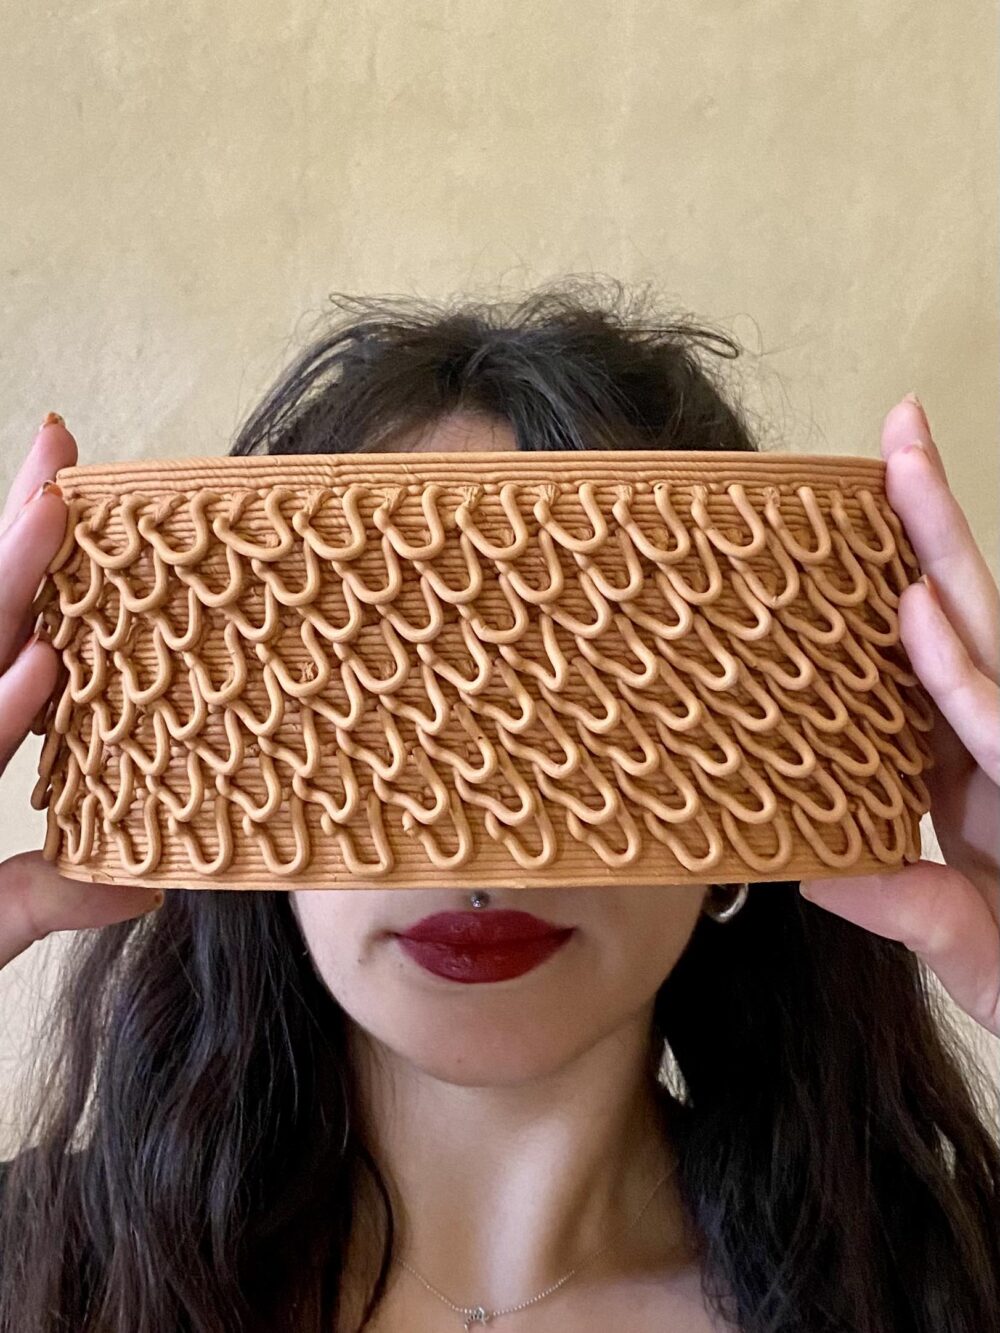 3D printed ceramic brick